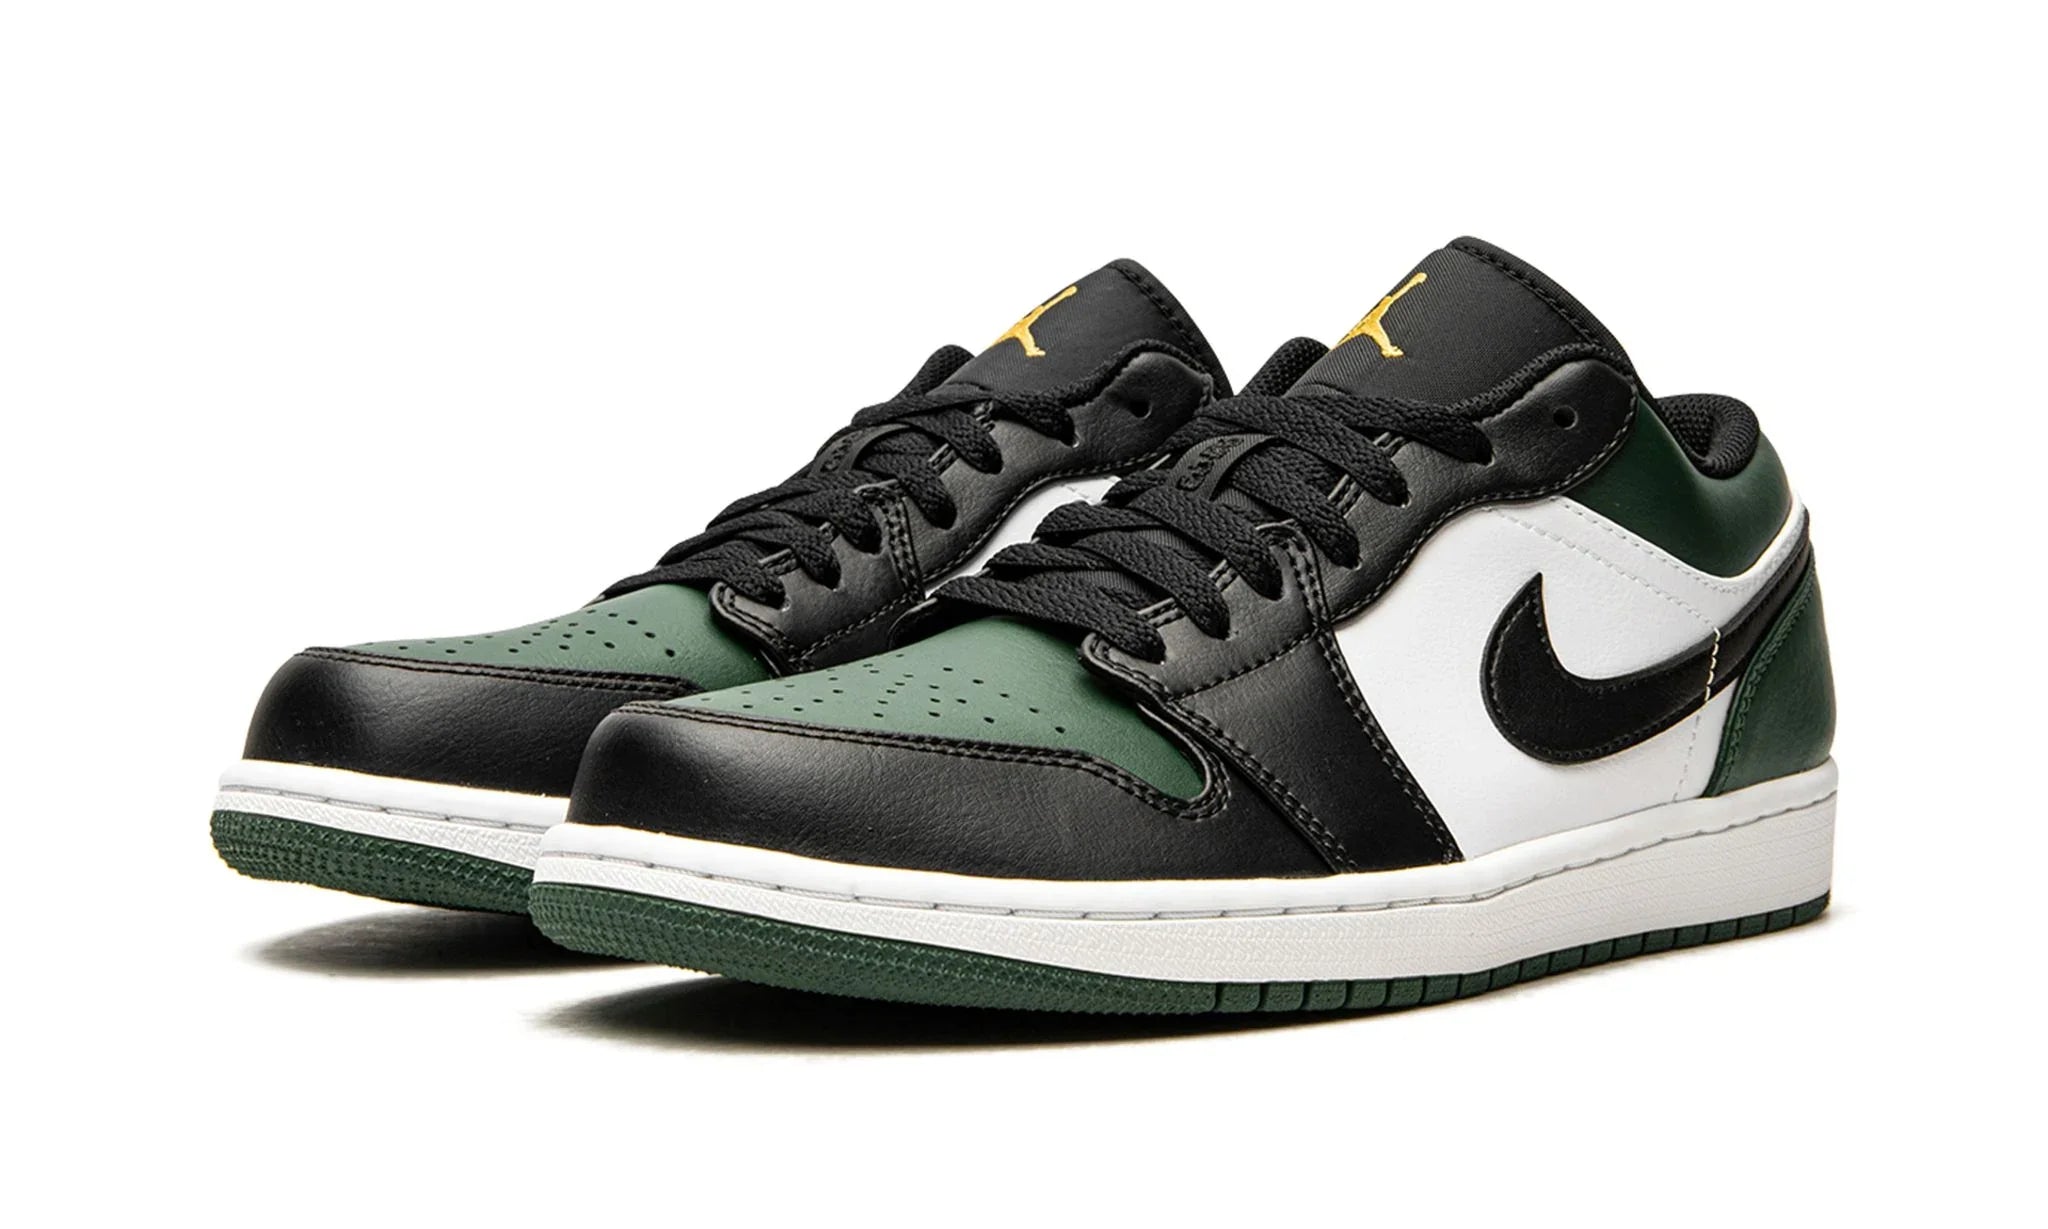 Jordan 1 Low "Green Toe" - 553560-371 - Sneakers